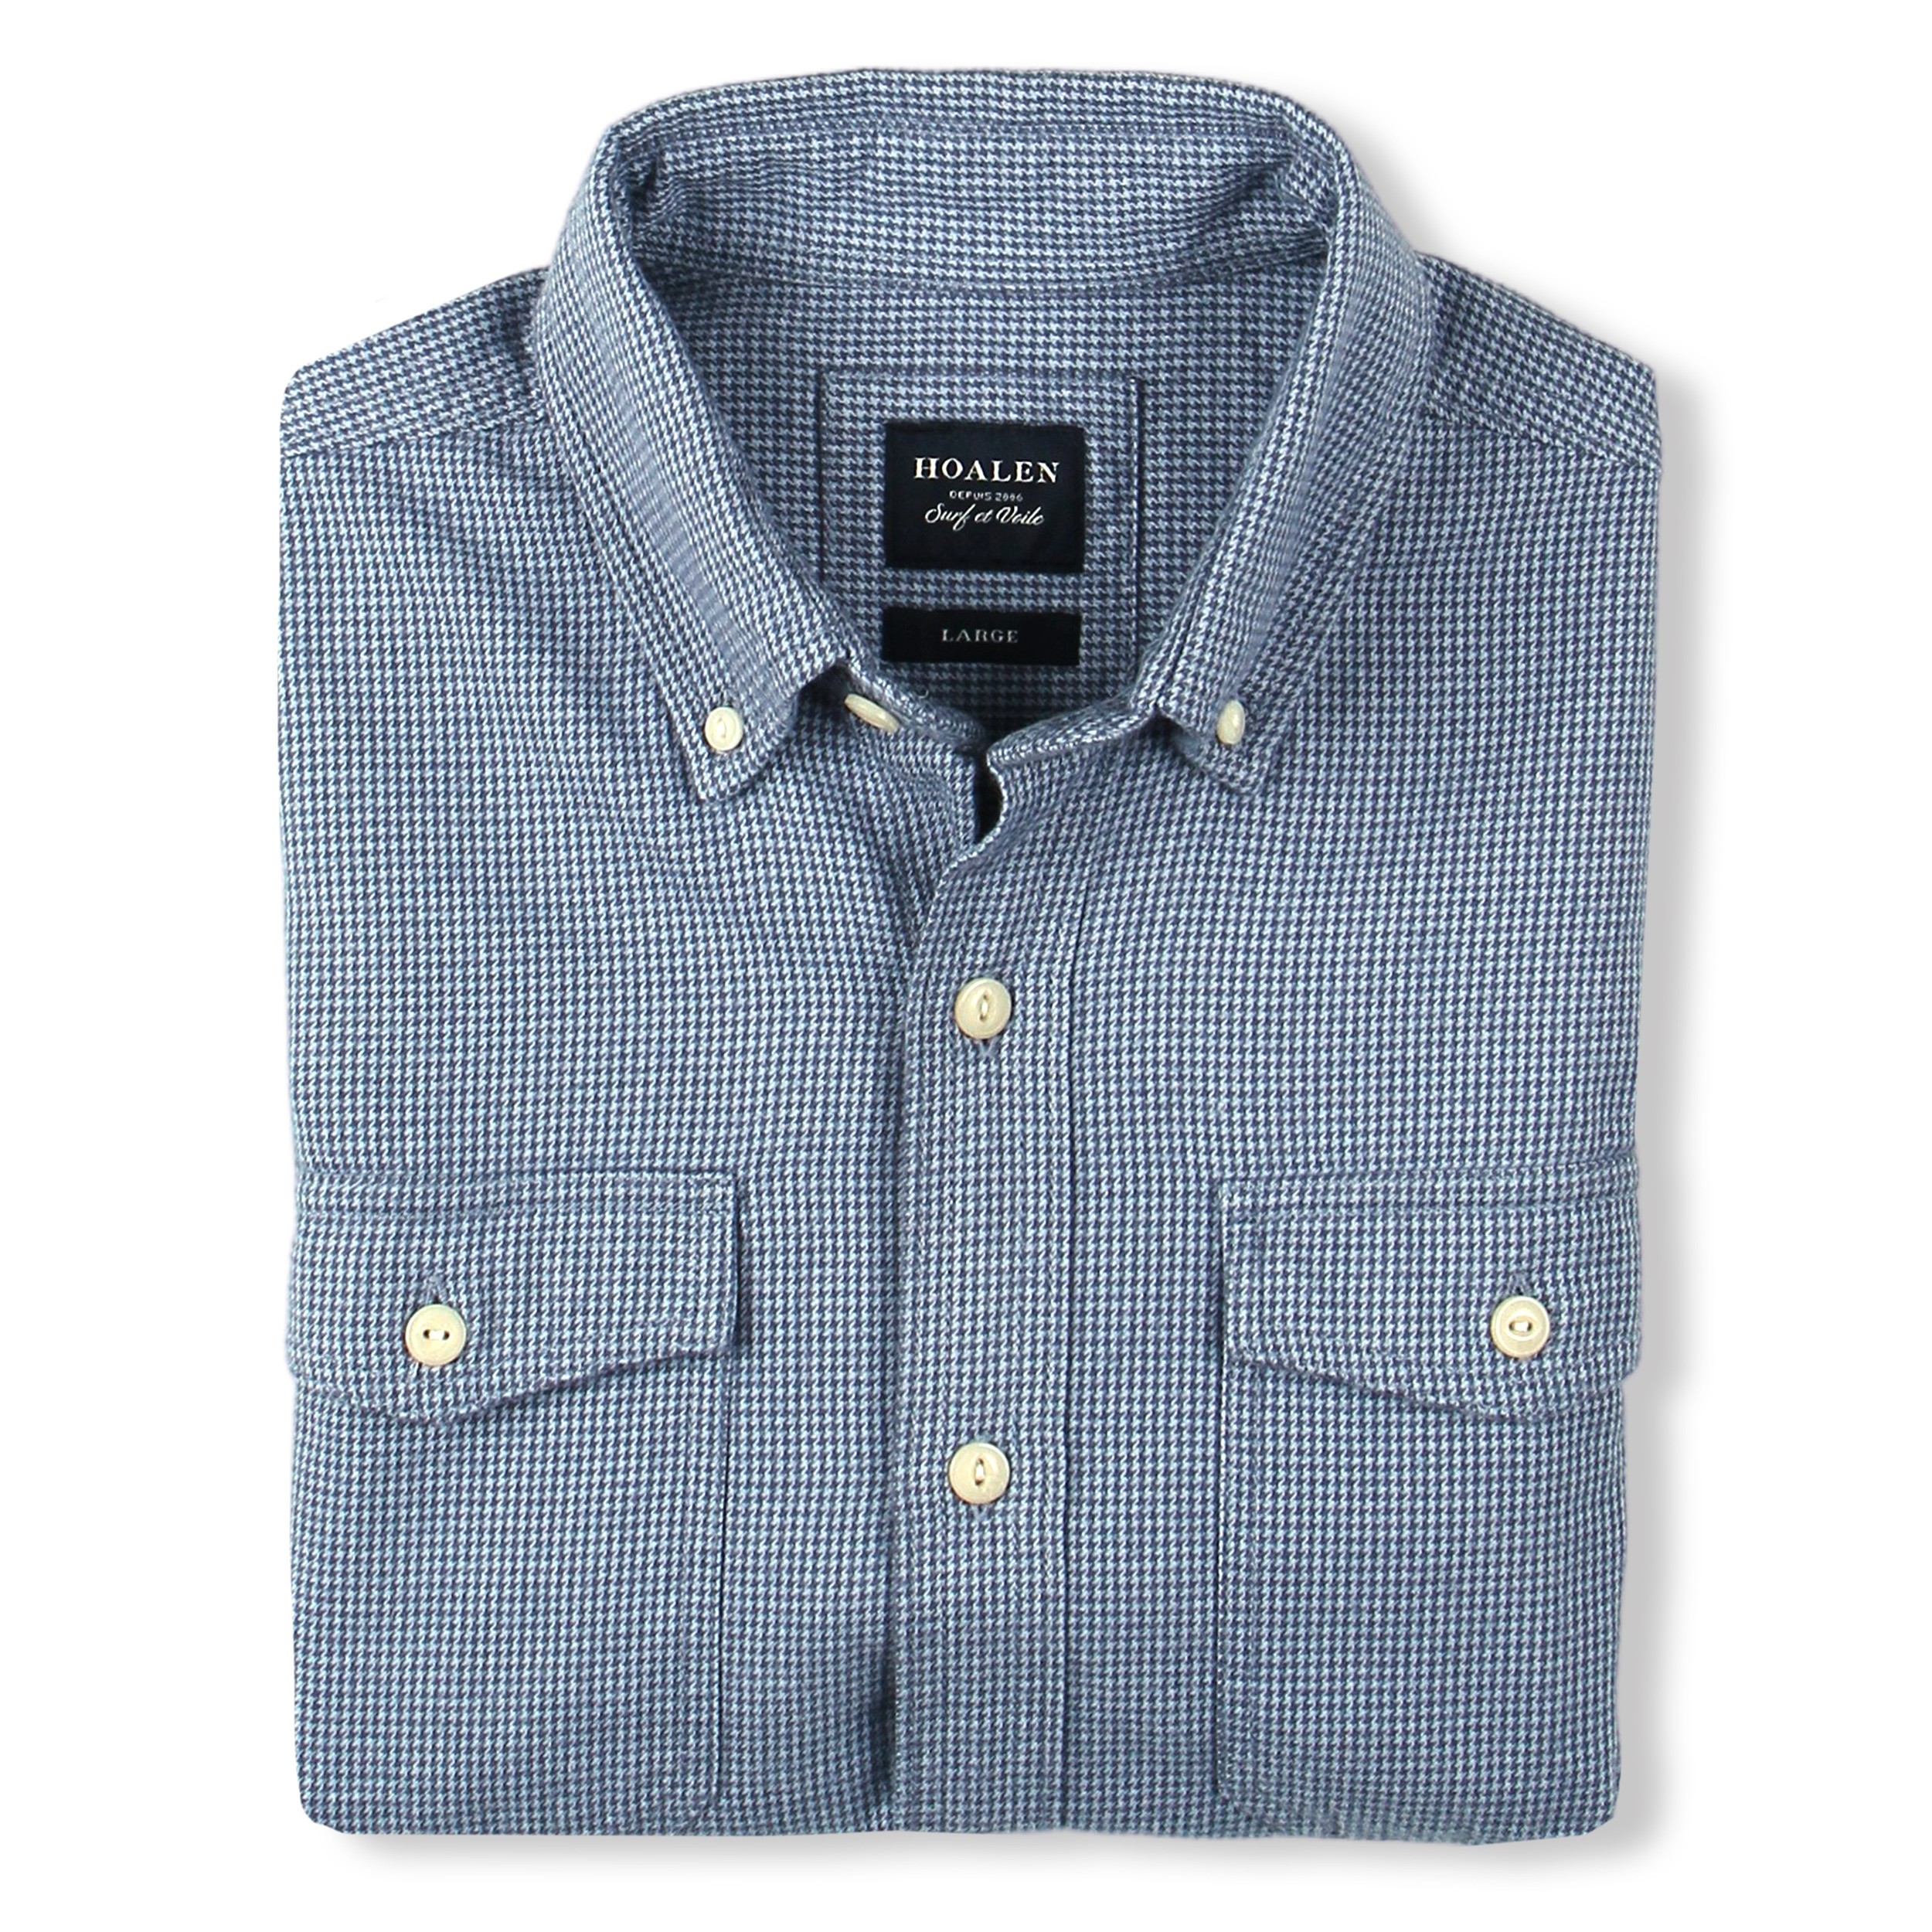 Men's classic shirt - Flannel - Ultra soft hand feel | Hoalen